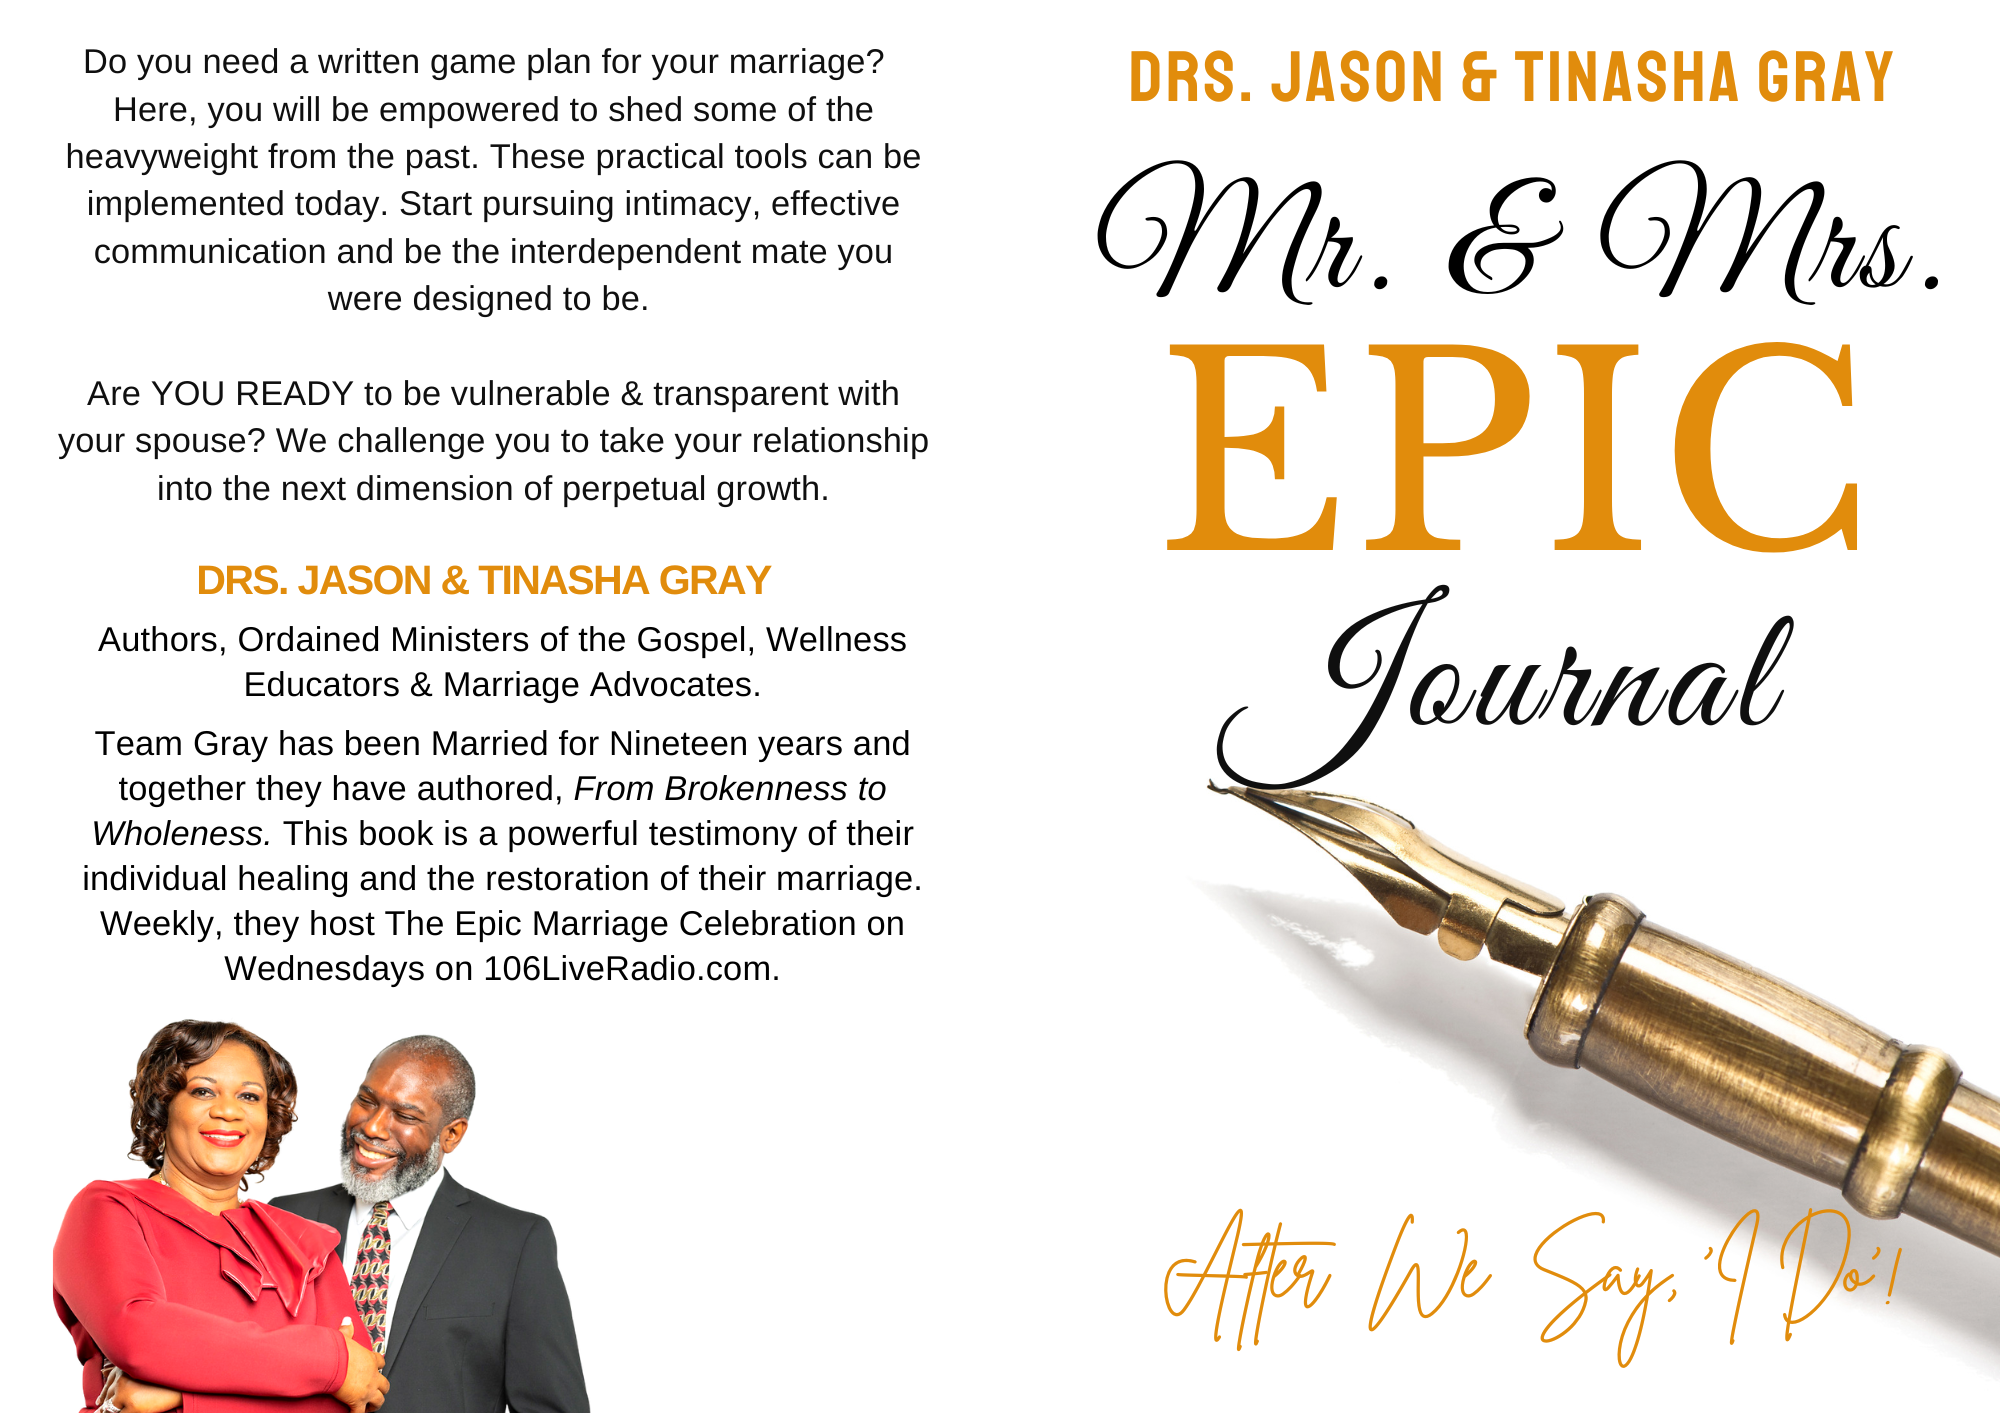 Mr. & Mrs. EPIC Journal: After We Say, I Do!